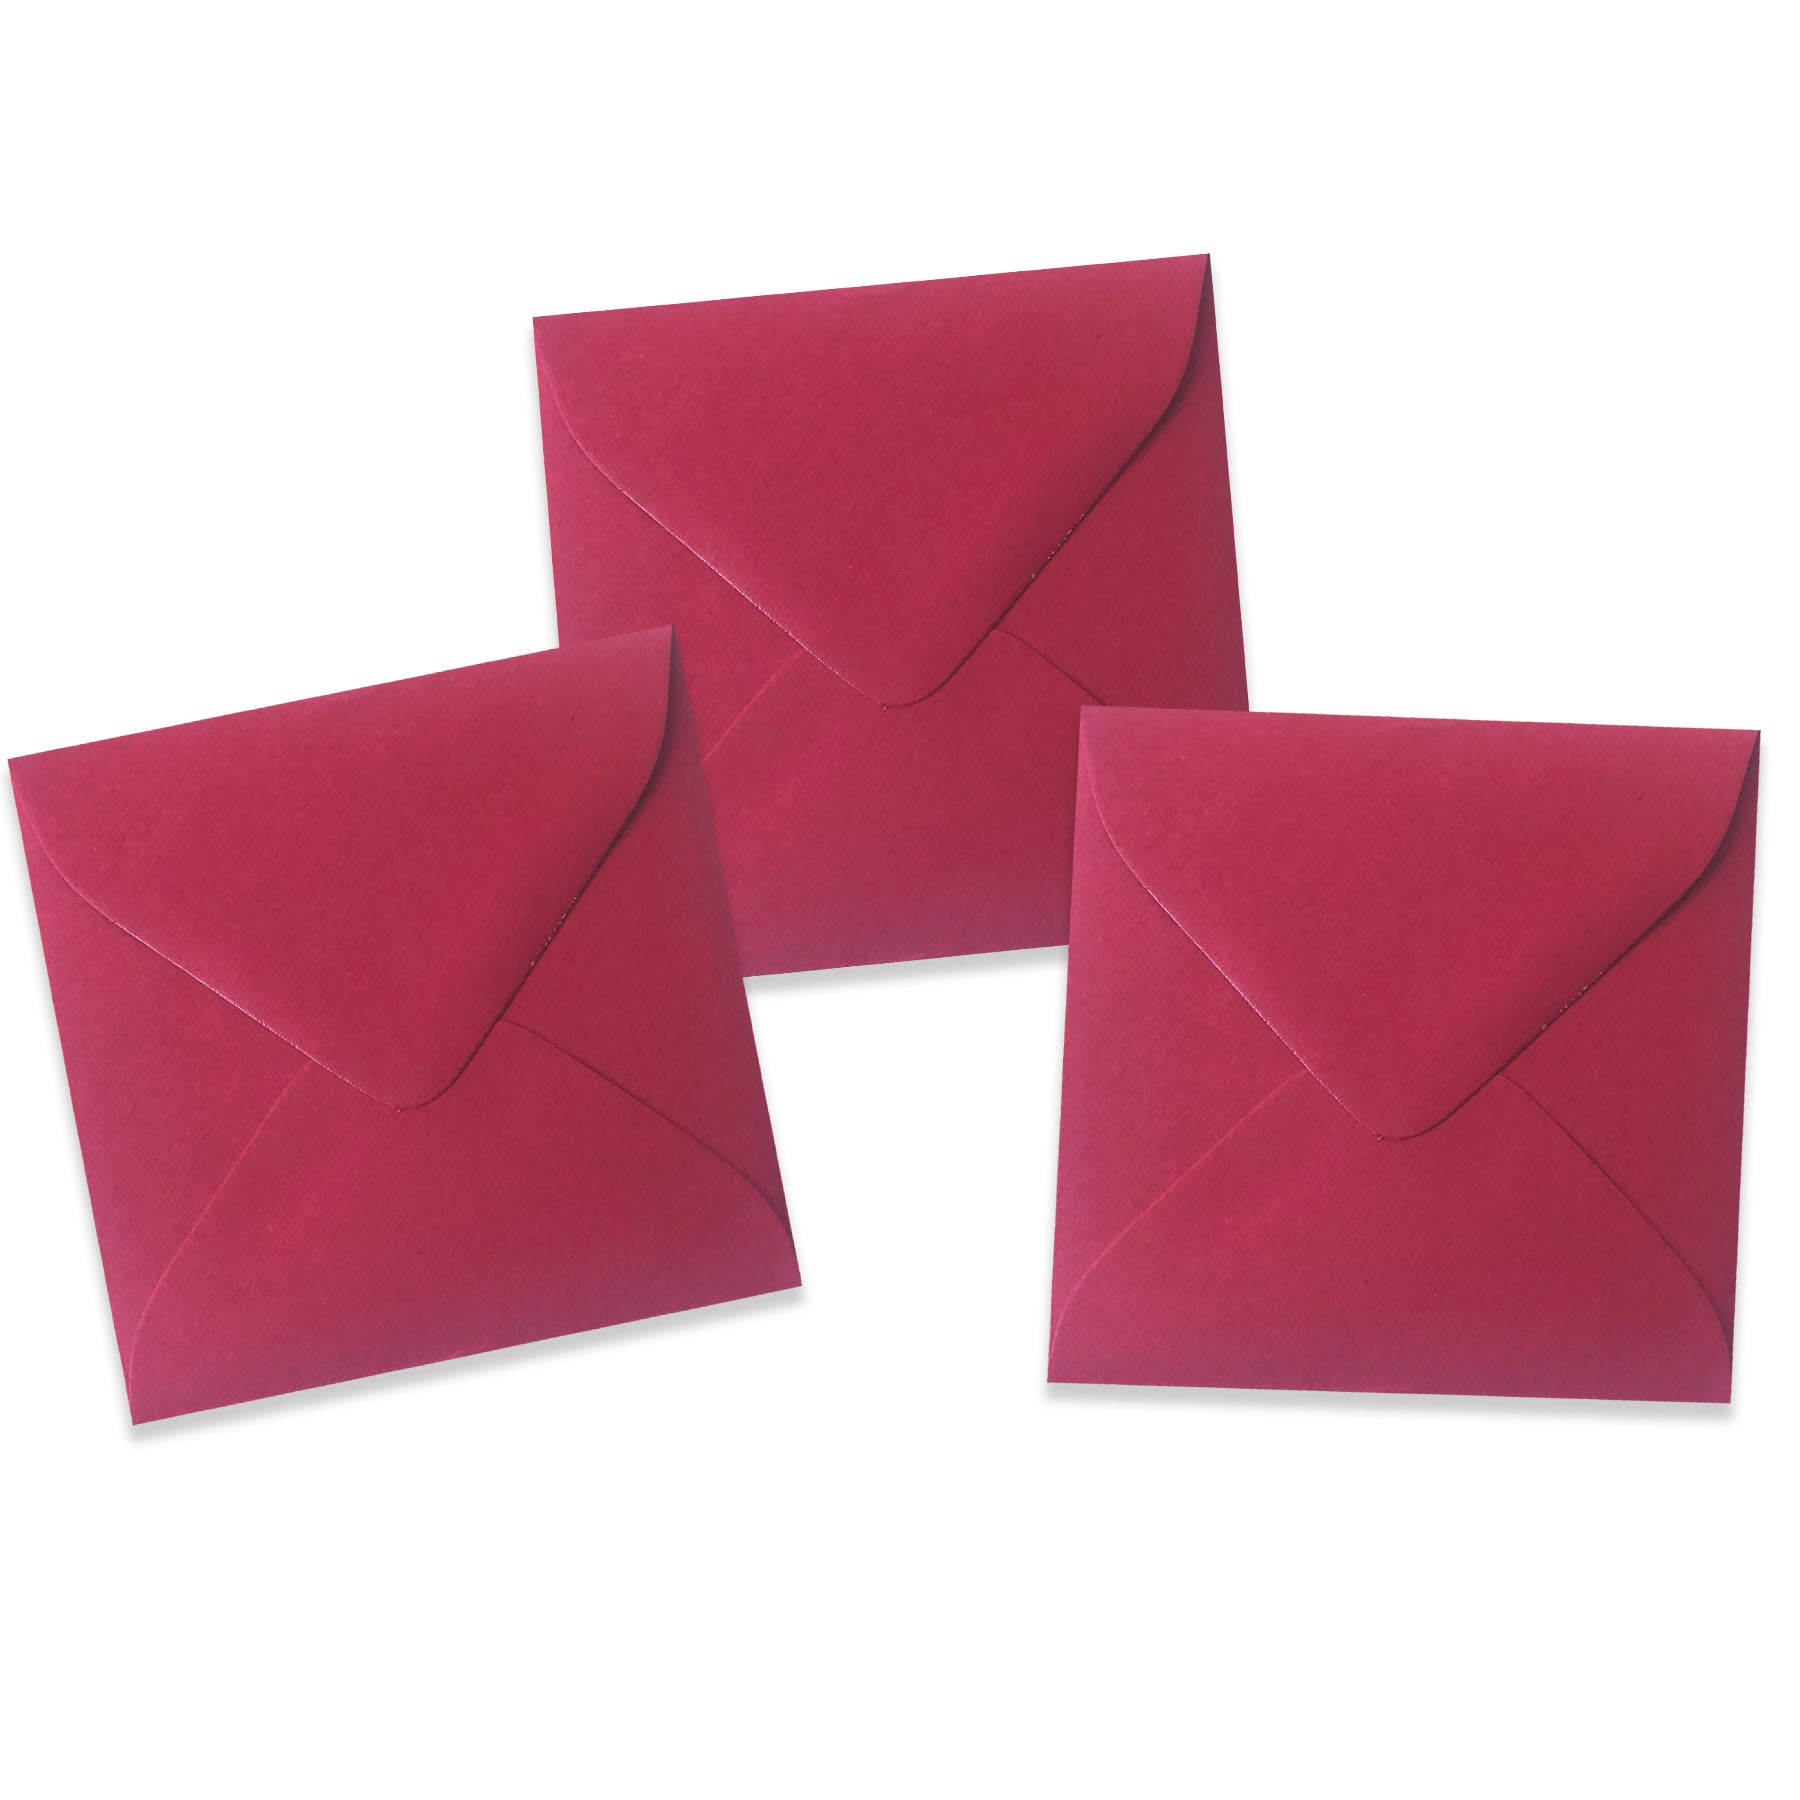 Natural 5.5 in. Square Envelopes - 50 PK